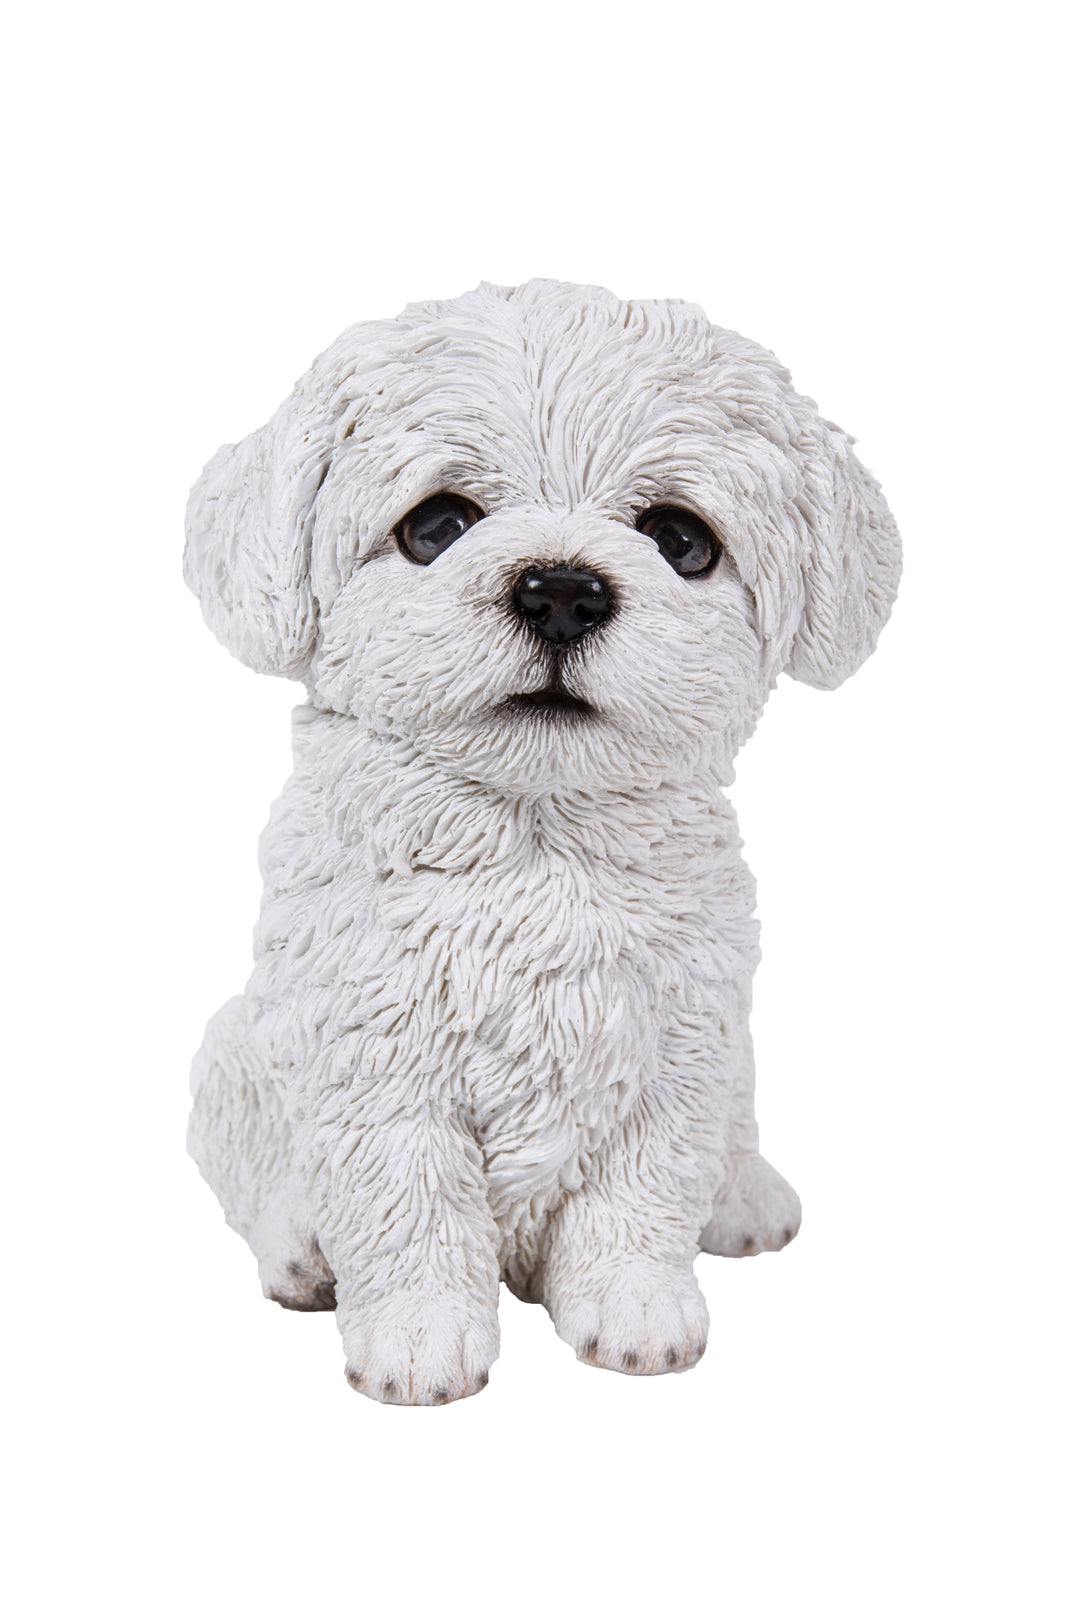 Pet Pals - Maltese Puppy White Statue HI-LINE GIFT LTD.